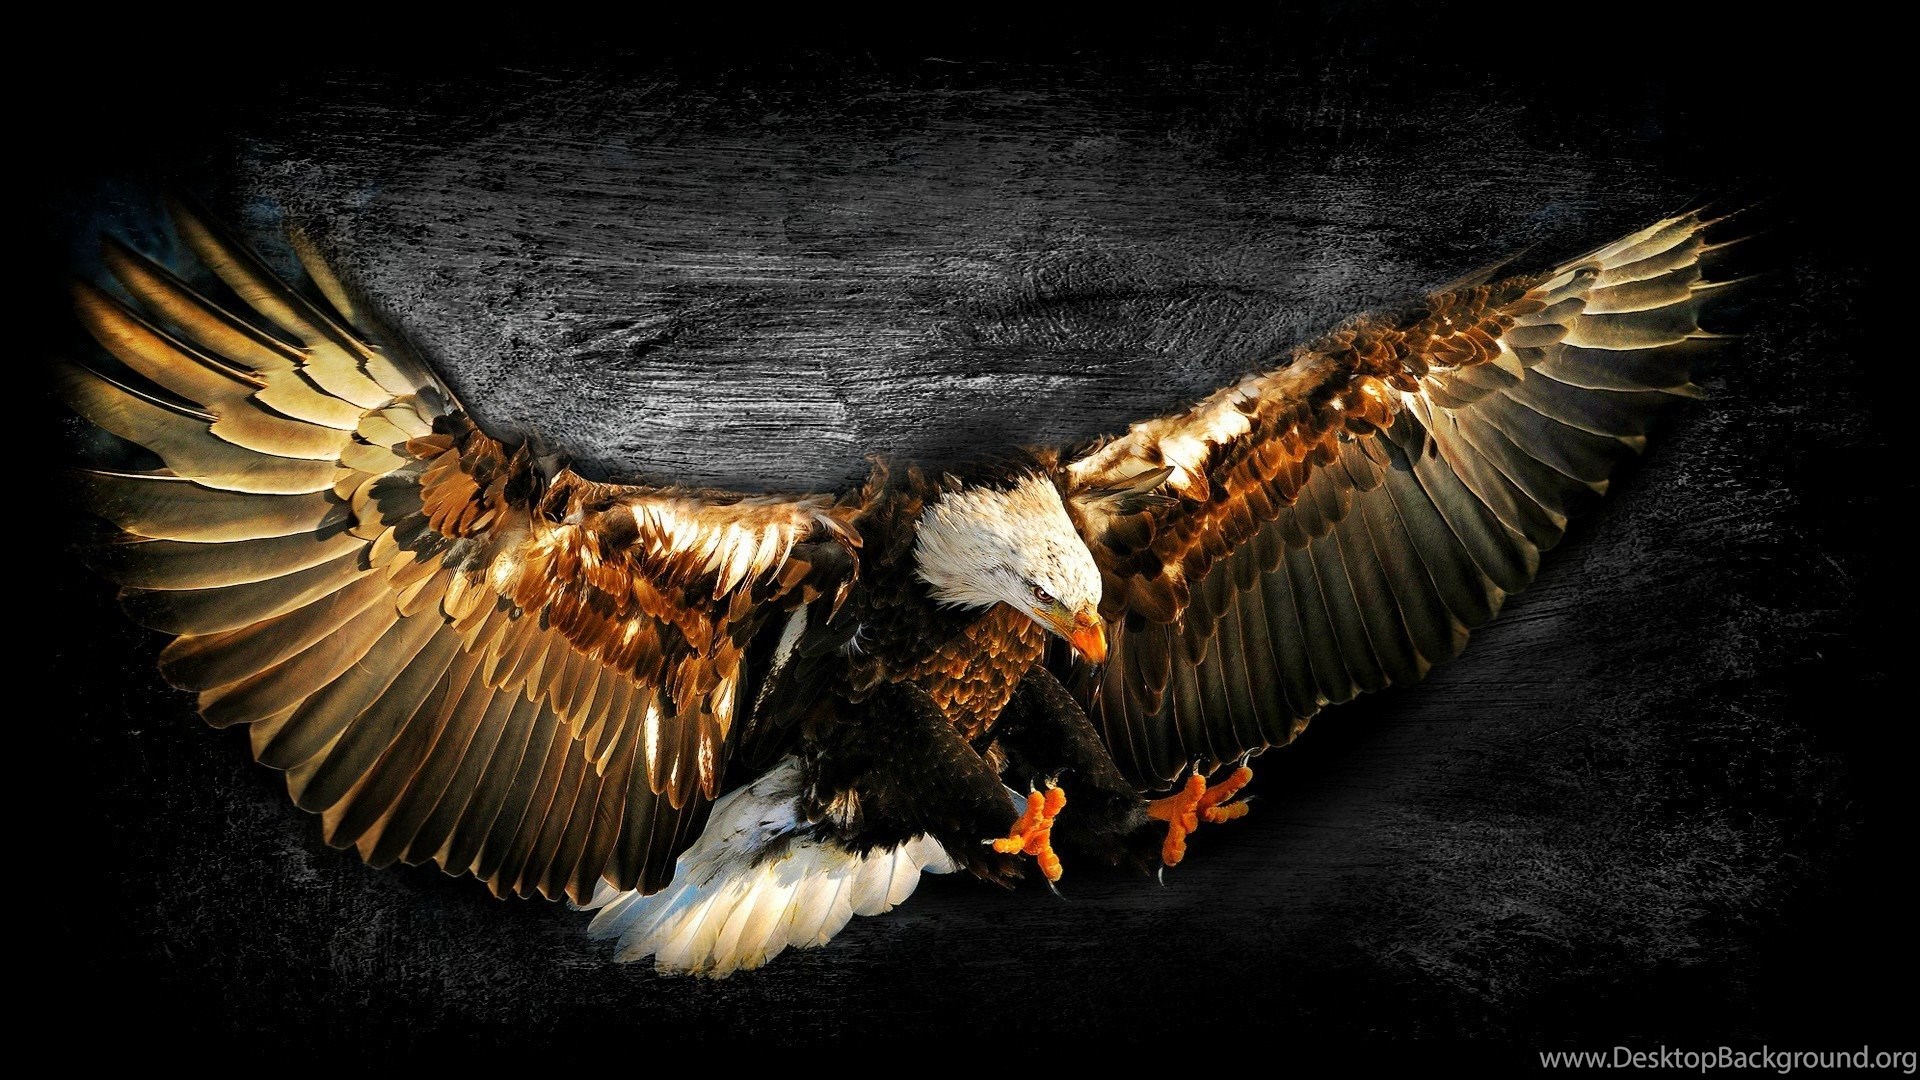 Bald Eagle Work Of Art Wallpaper Desktop Background